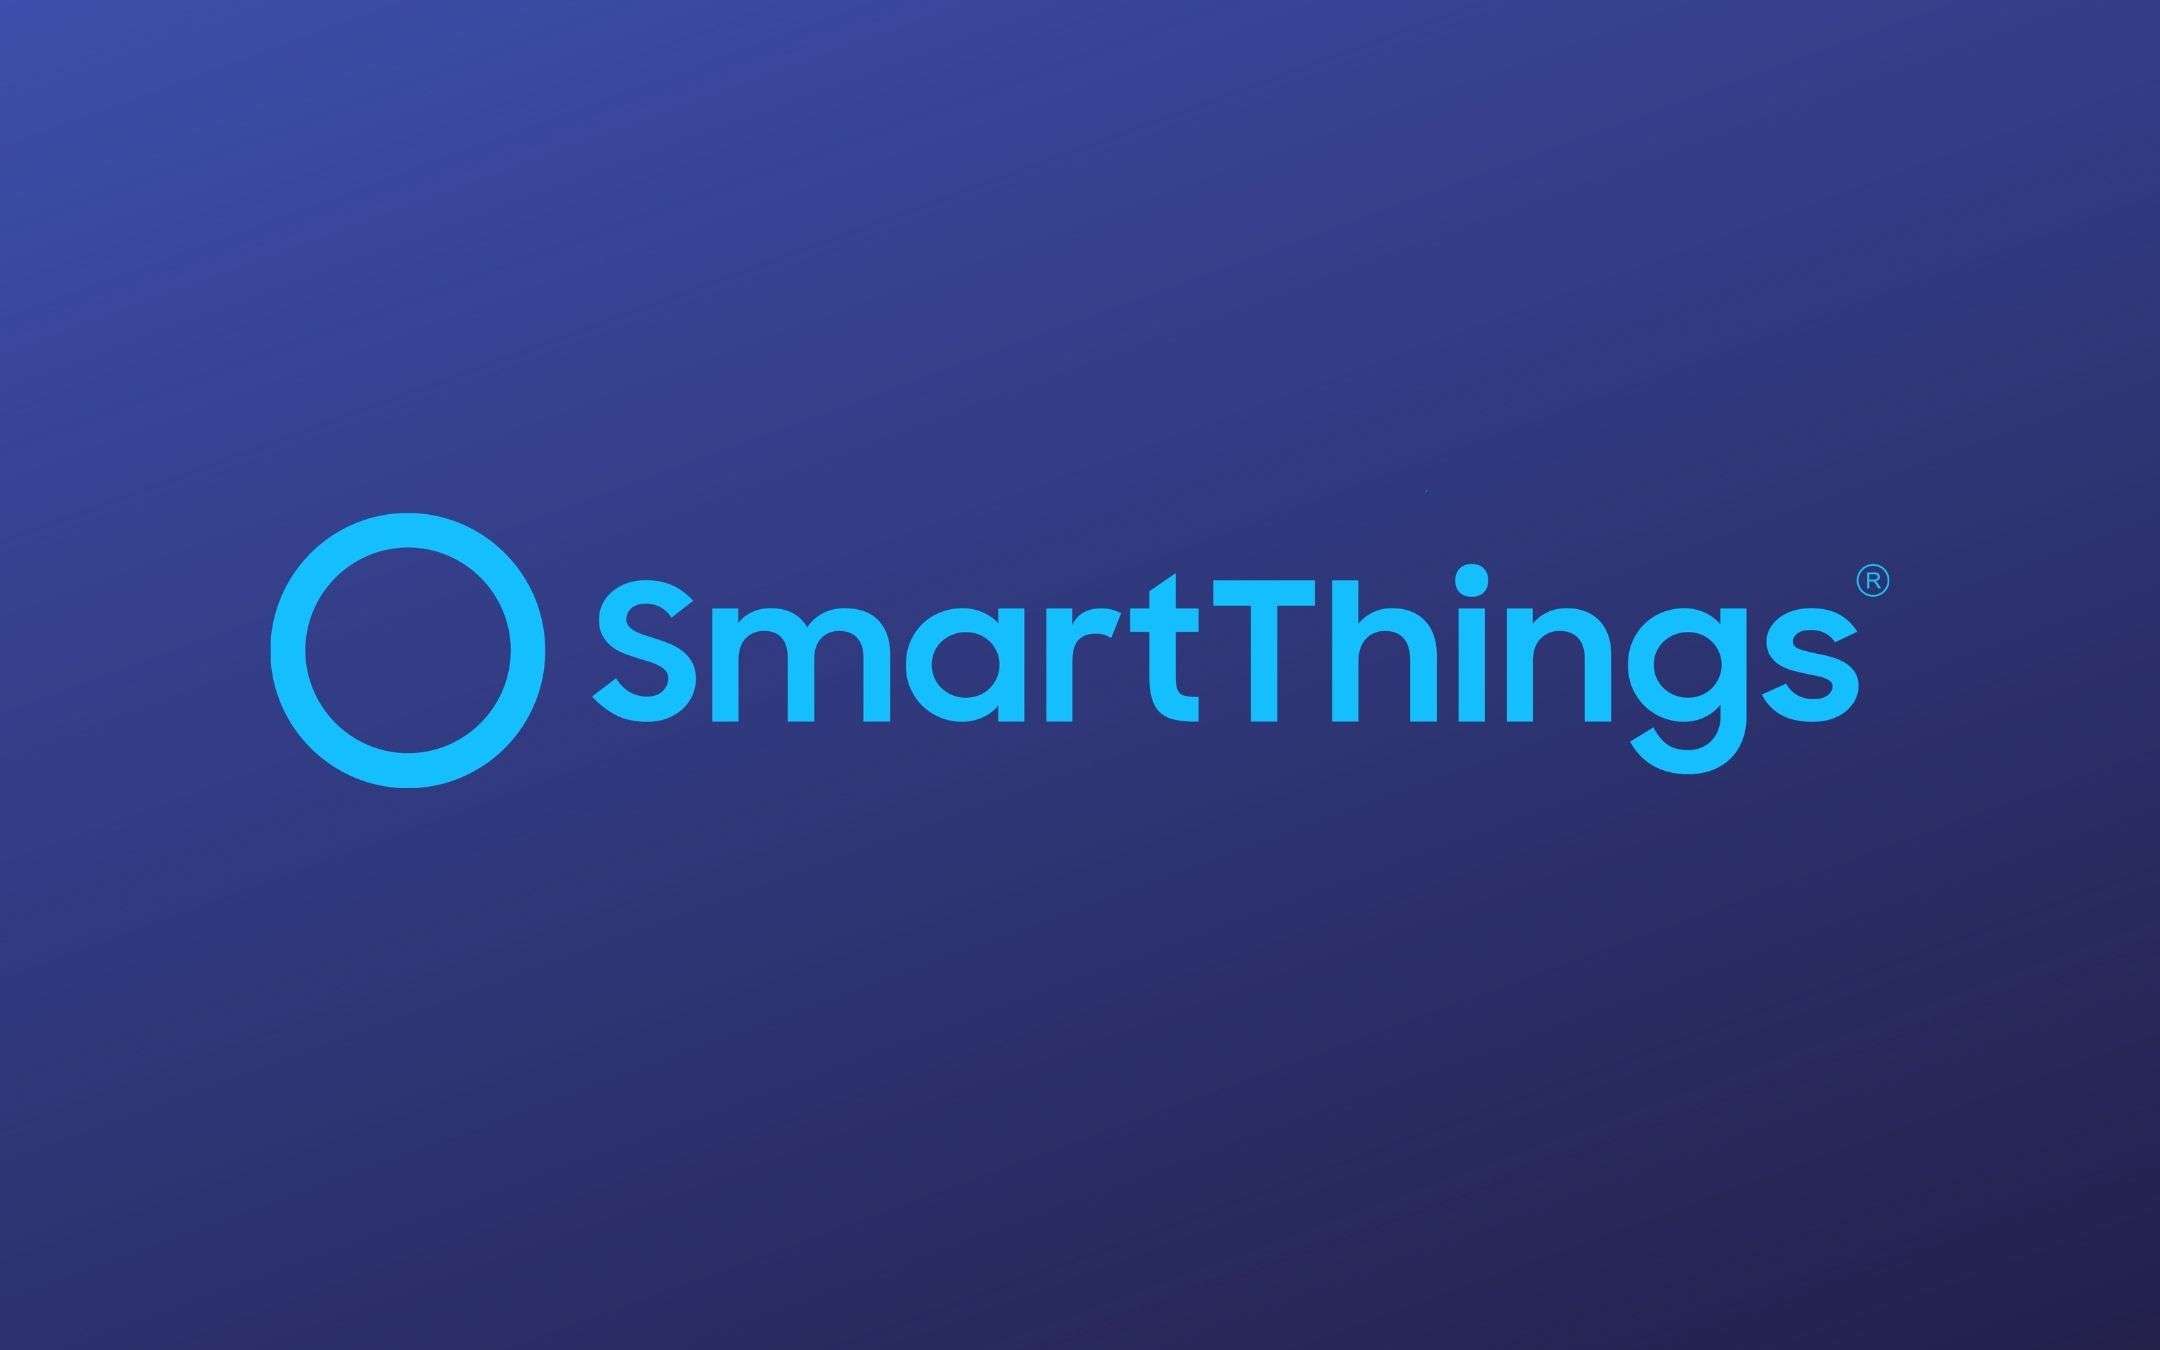 Samsung SmartThings è disponibile su PC Windows 10